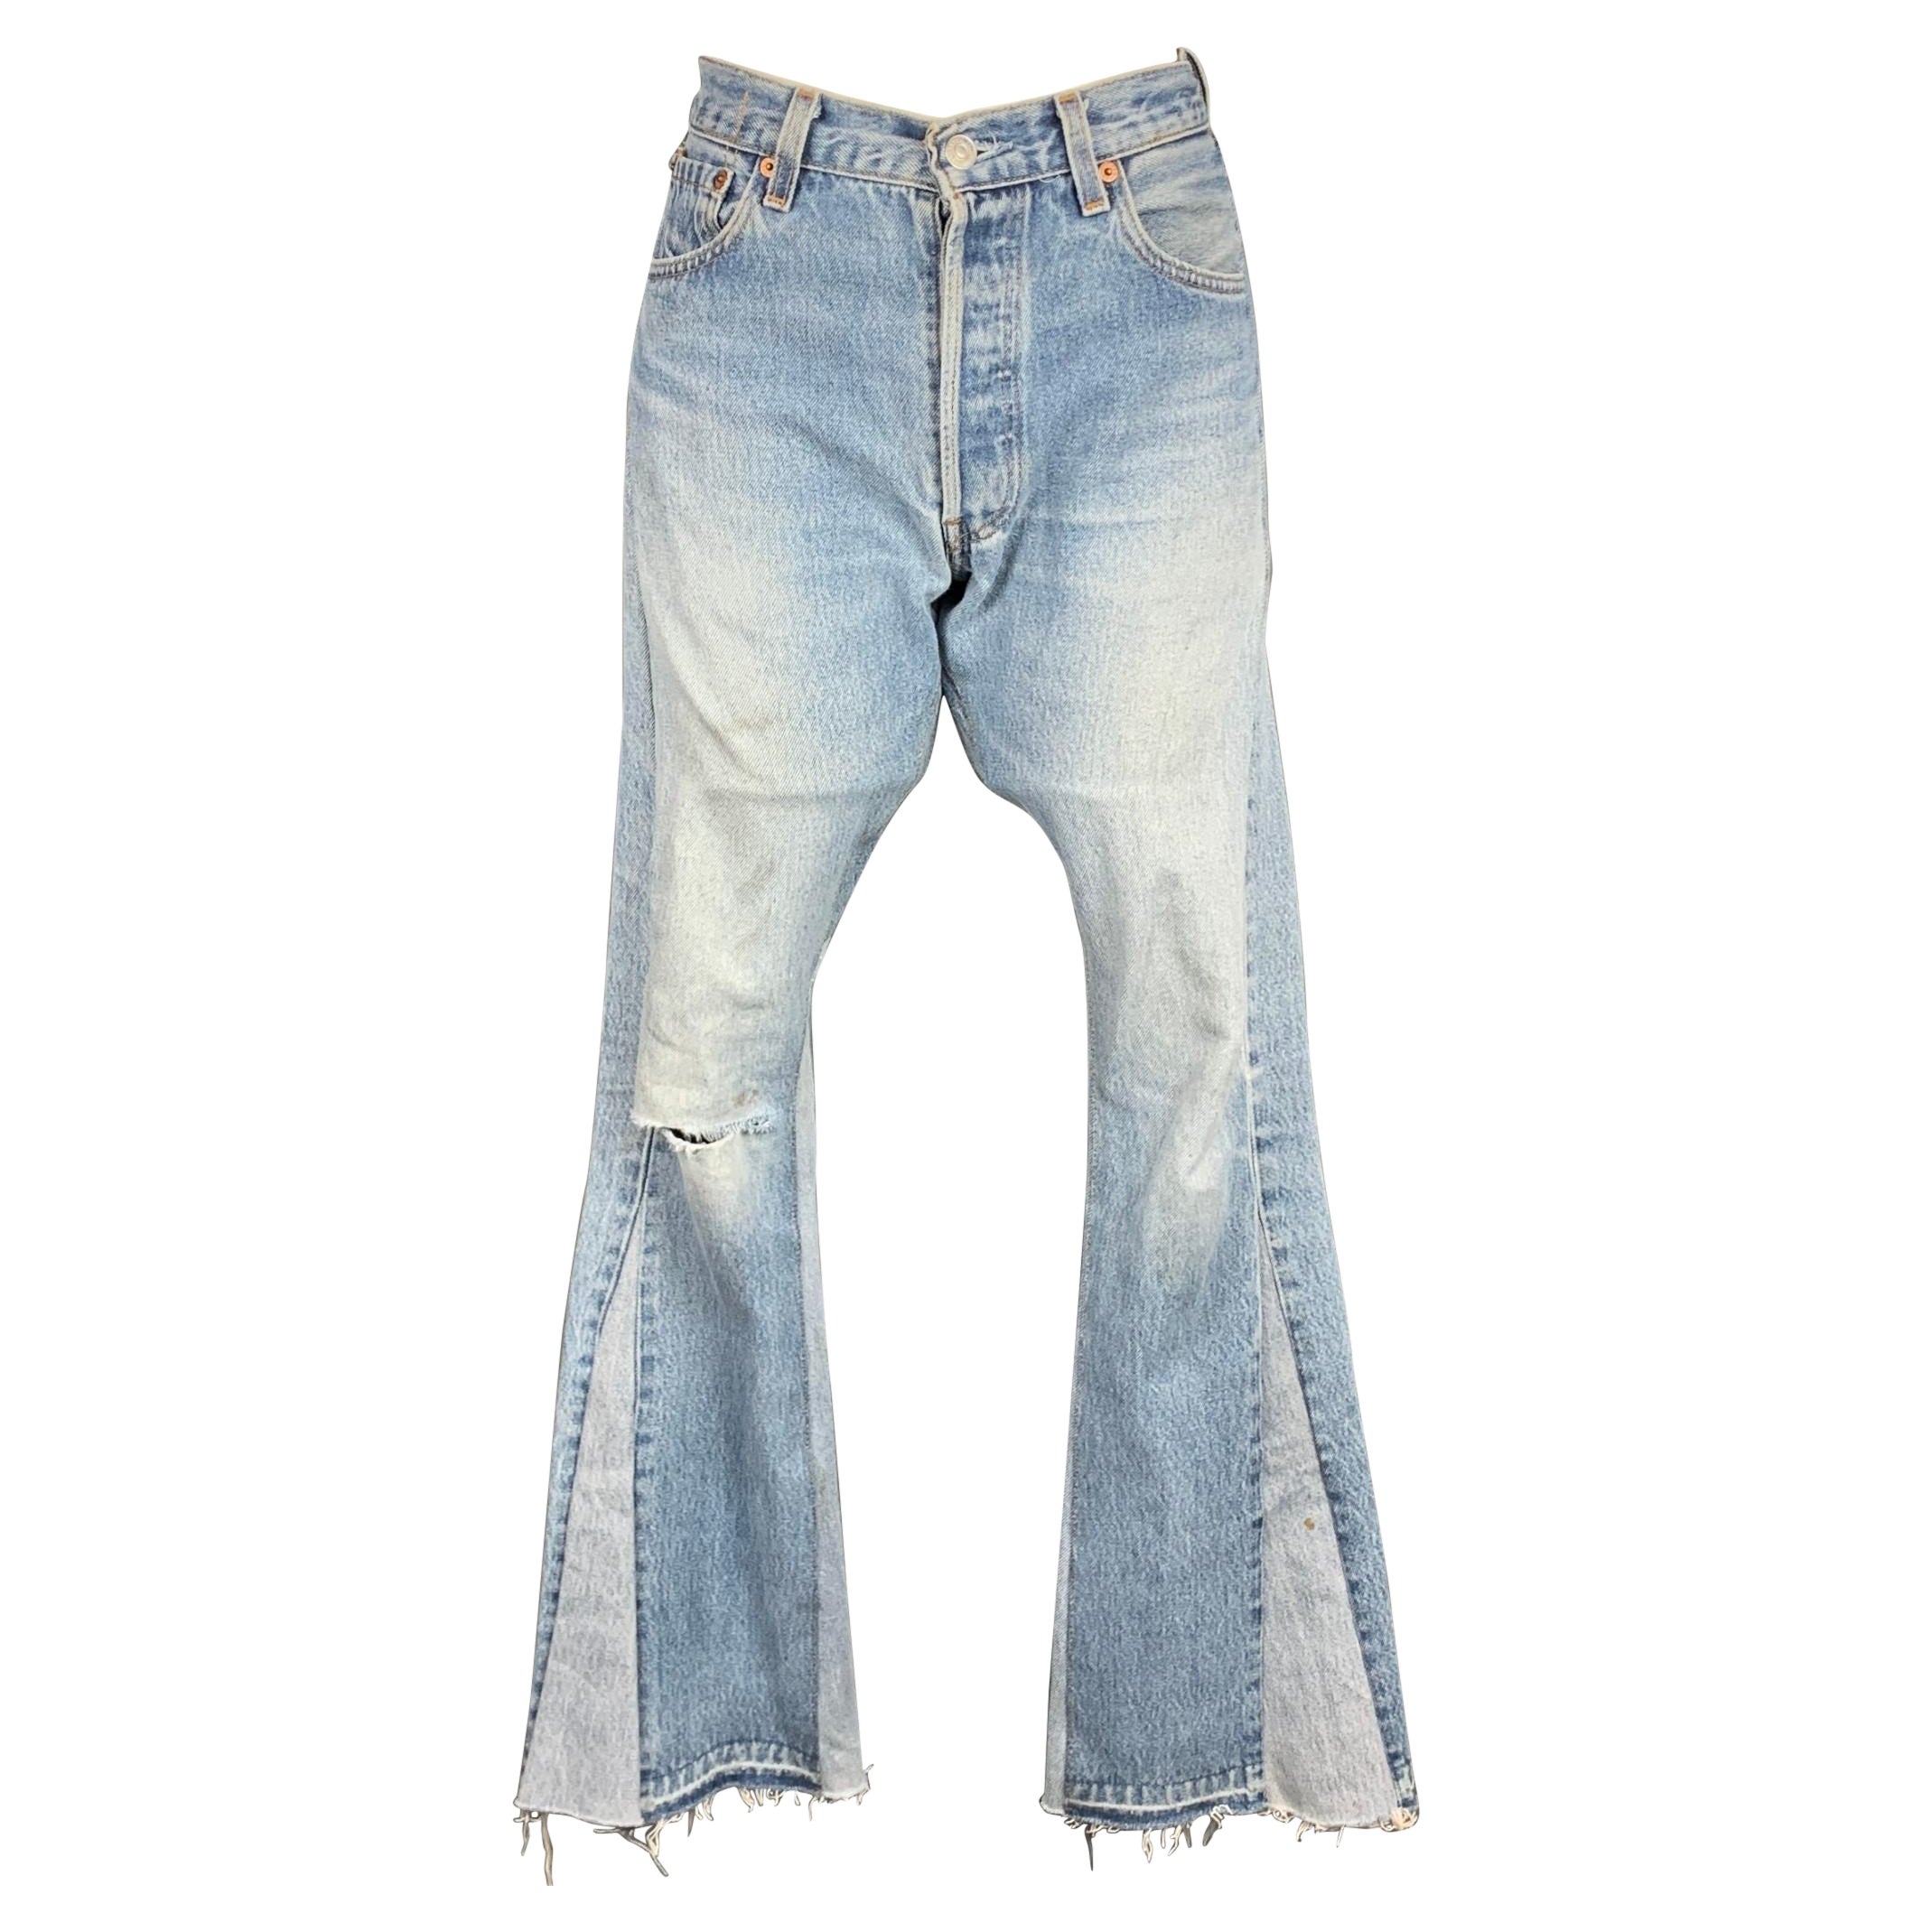 GALLERY DEPT. Size 26 Light Blue Denim Washed Re-Designed Flare Unique Jeans